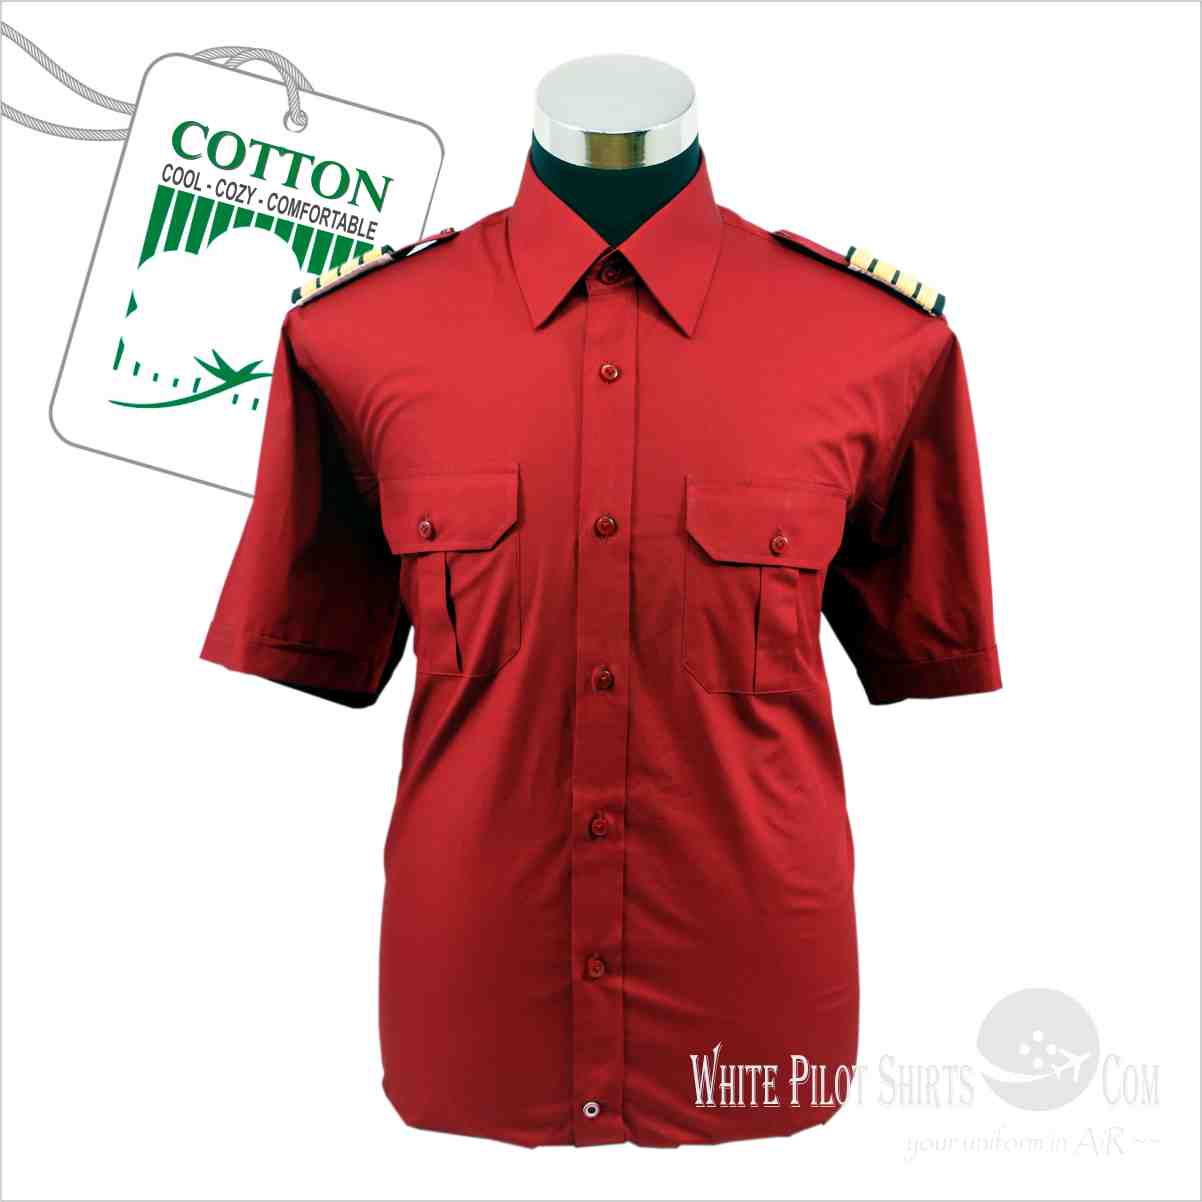 Red Pilot Shirts - Made 2 Measure Pilot Uniform Shirts | Tailor-made ...